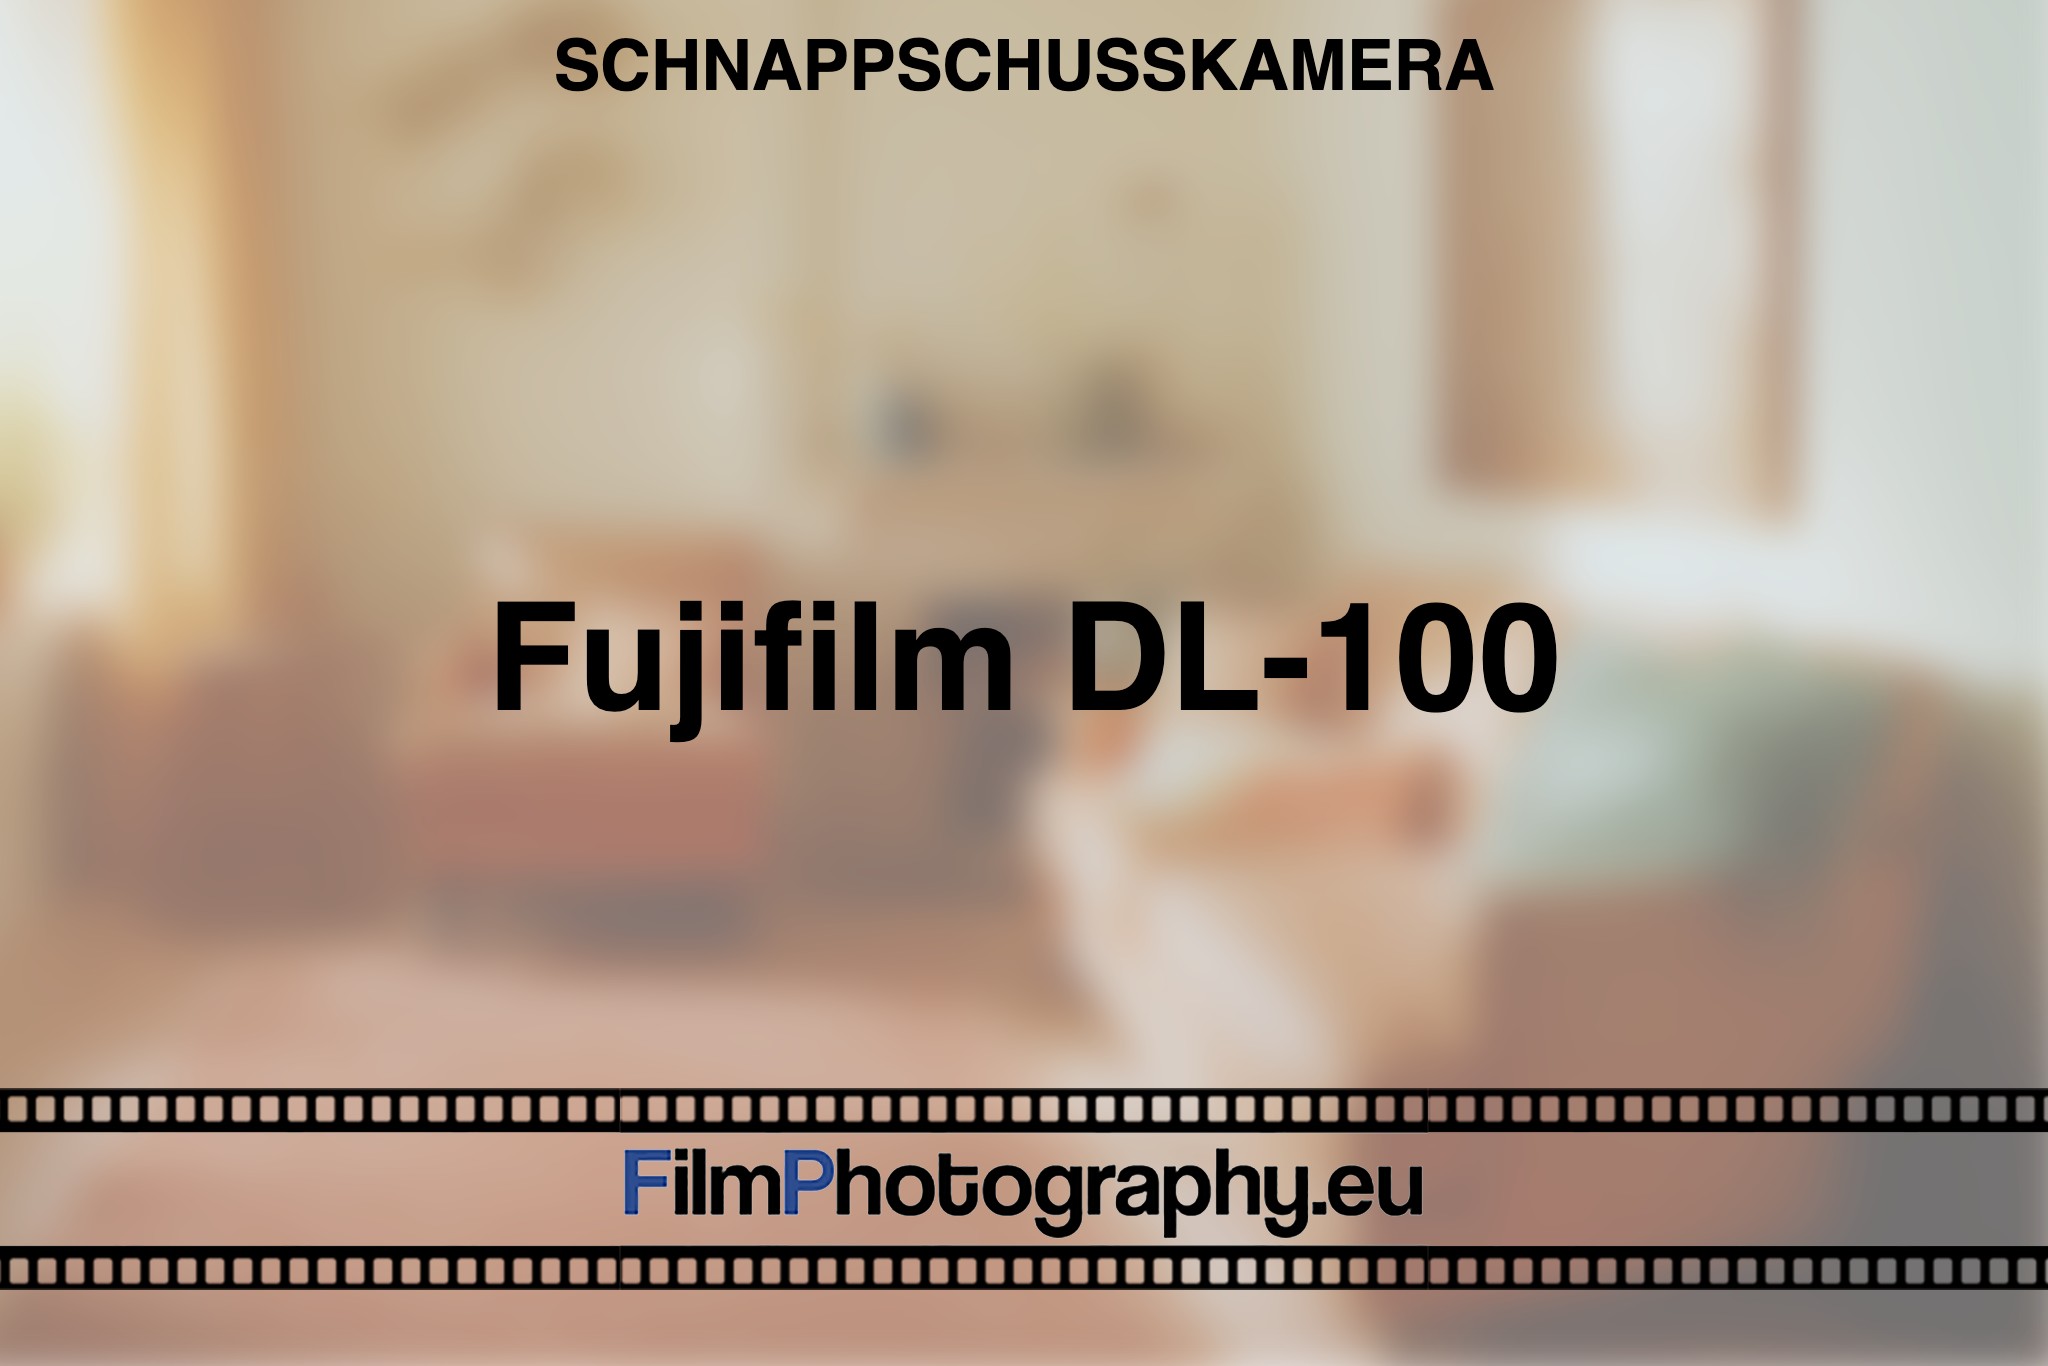 fujifilm-dl-100-schnappschusskamera-bnv